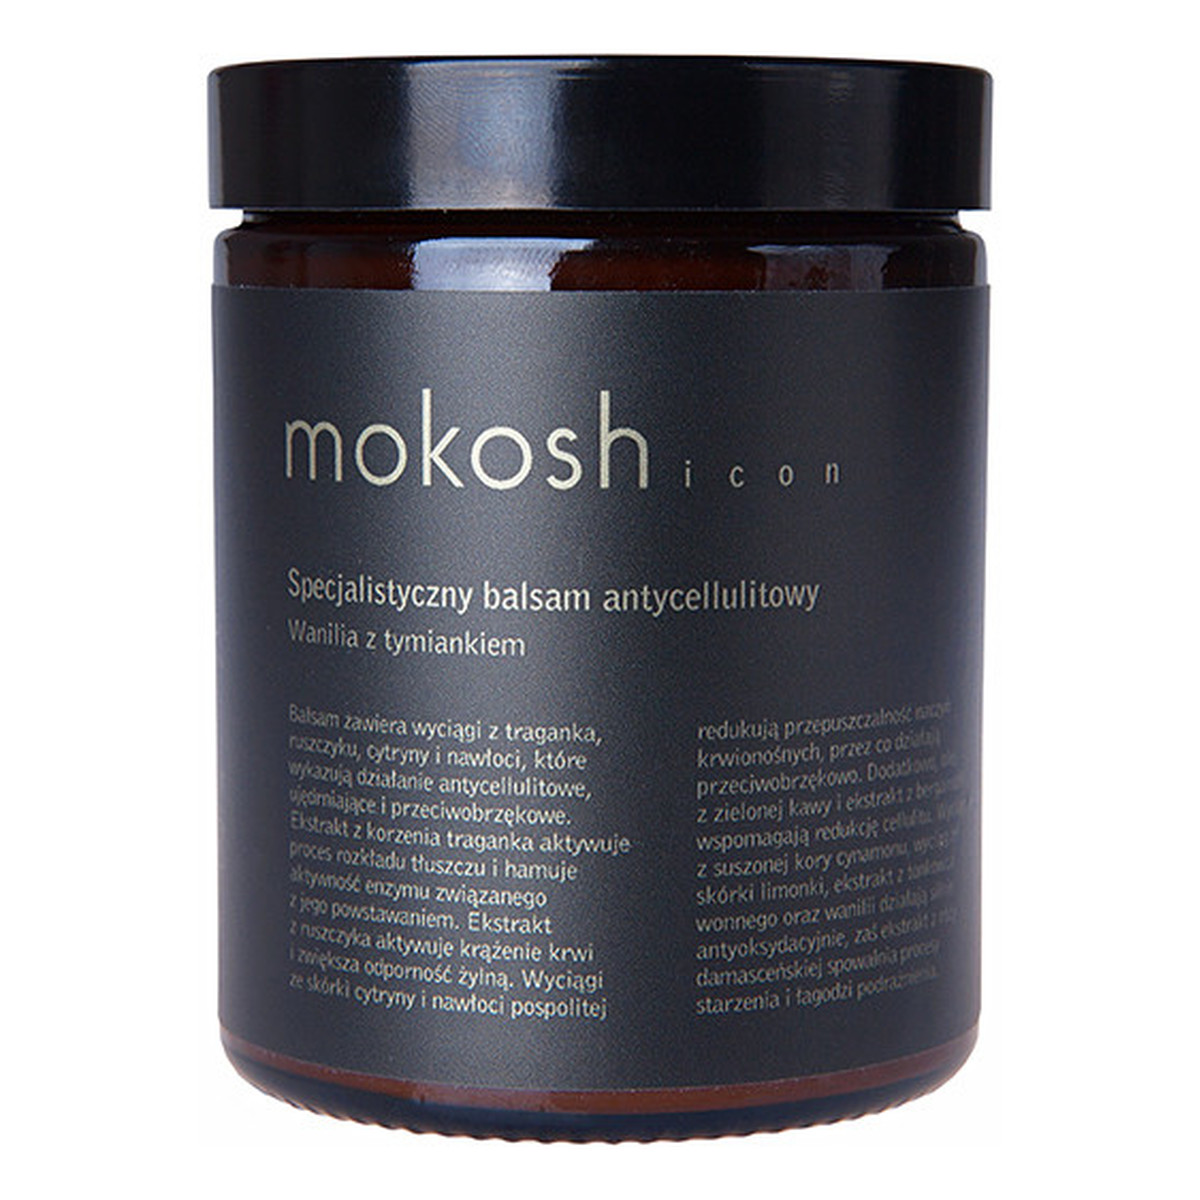 Mokosh ICON Specjalistyczny Balsam Antycellulitowy Wanilia z tymiankiem (słoik szklany) 180ml